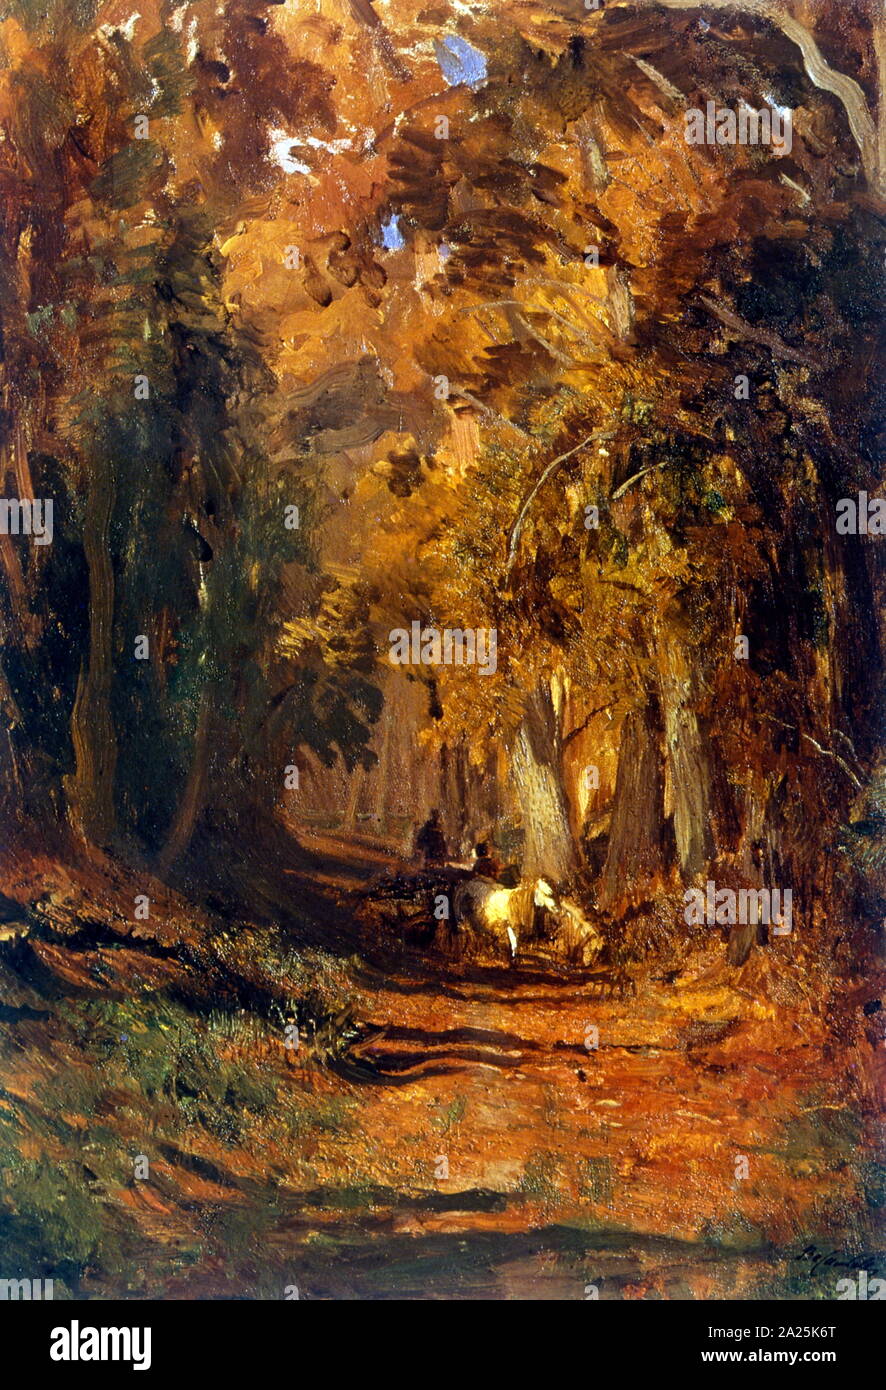 Wald im Herbst ca. 1870 von Feodor Wassiljew, (1850-1873), russischer Landschaftsmaler, die lyrischen Landschaft Stil in der russischen Kunst eingeführt. Stockfoto